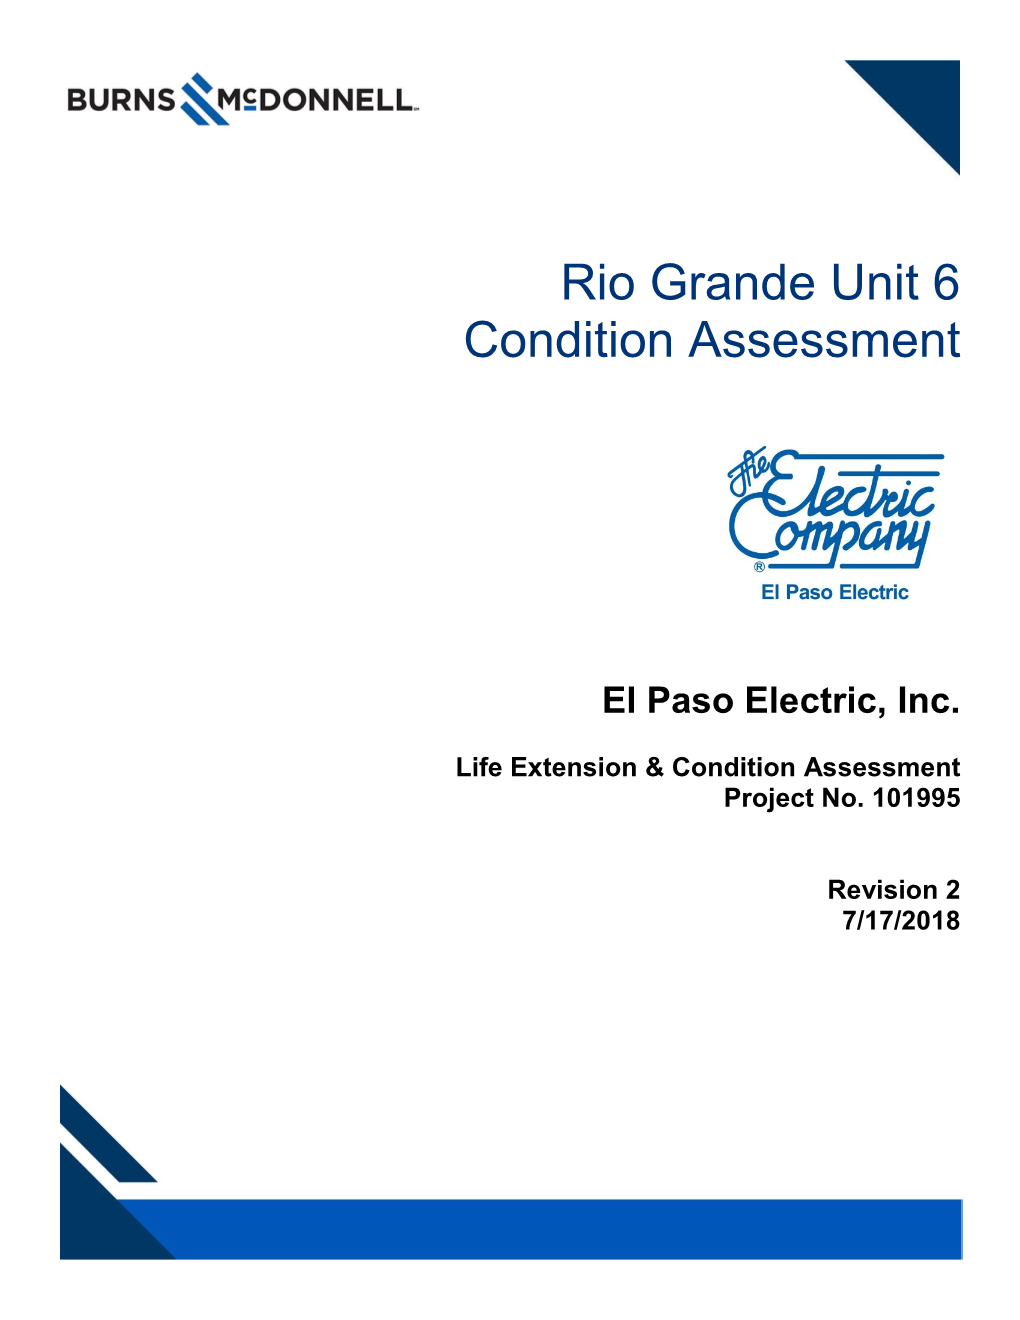 Rio Grande Unit 6 Condition Assessment